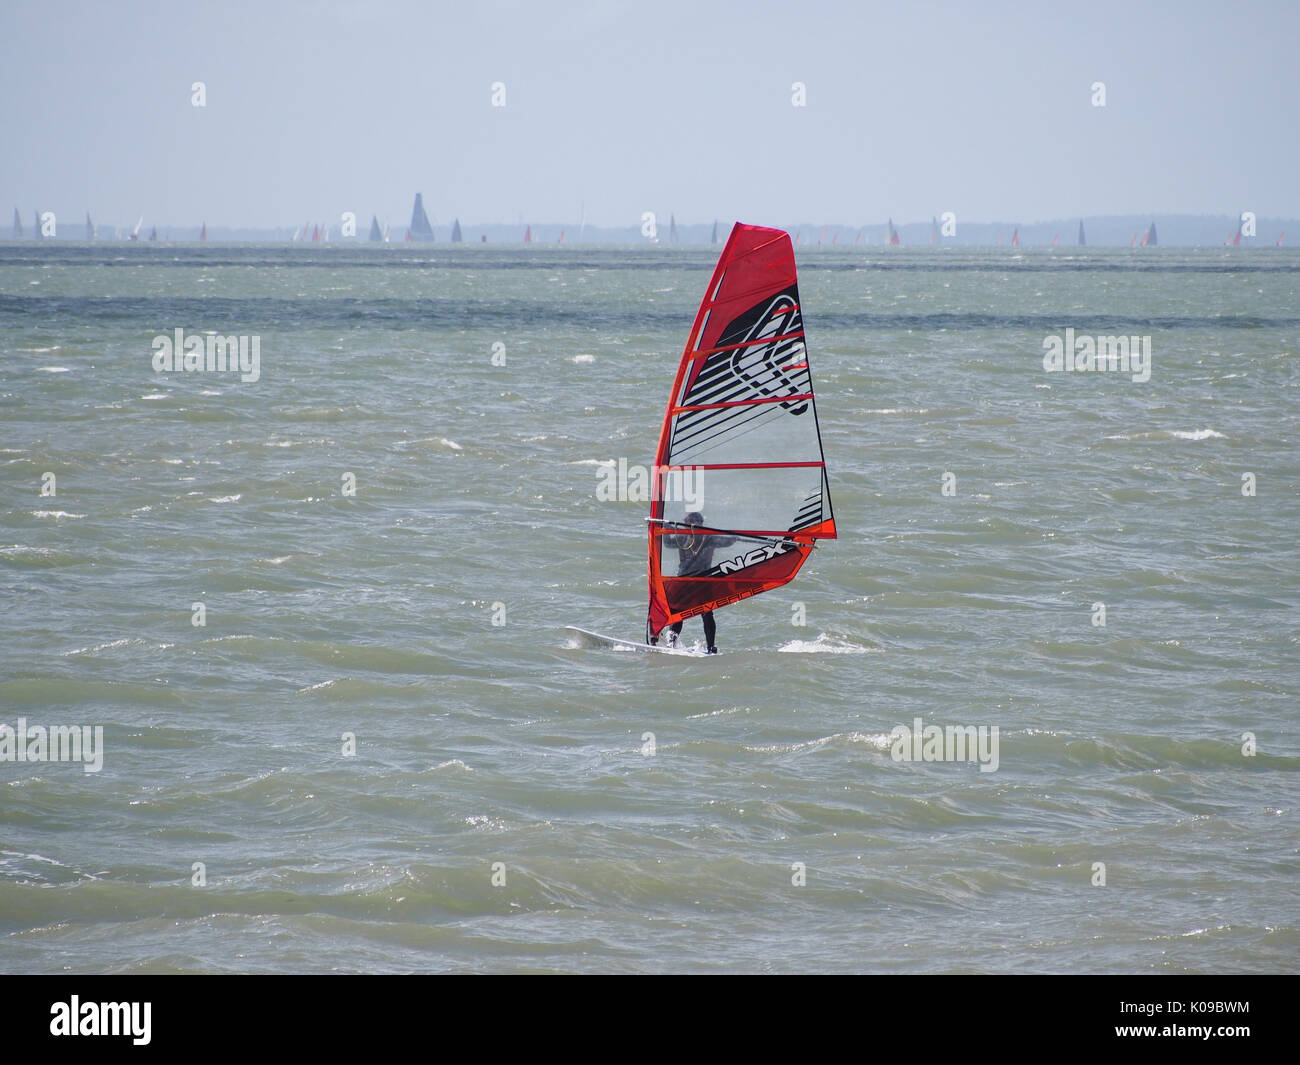 Un surfeur vent voiles sur le solent et l'île de Wight en arrière-plan. Banque D'Images